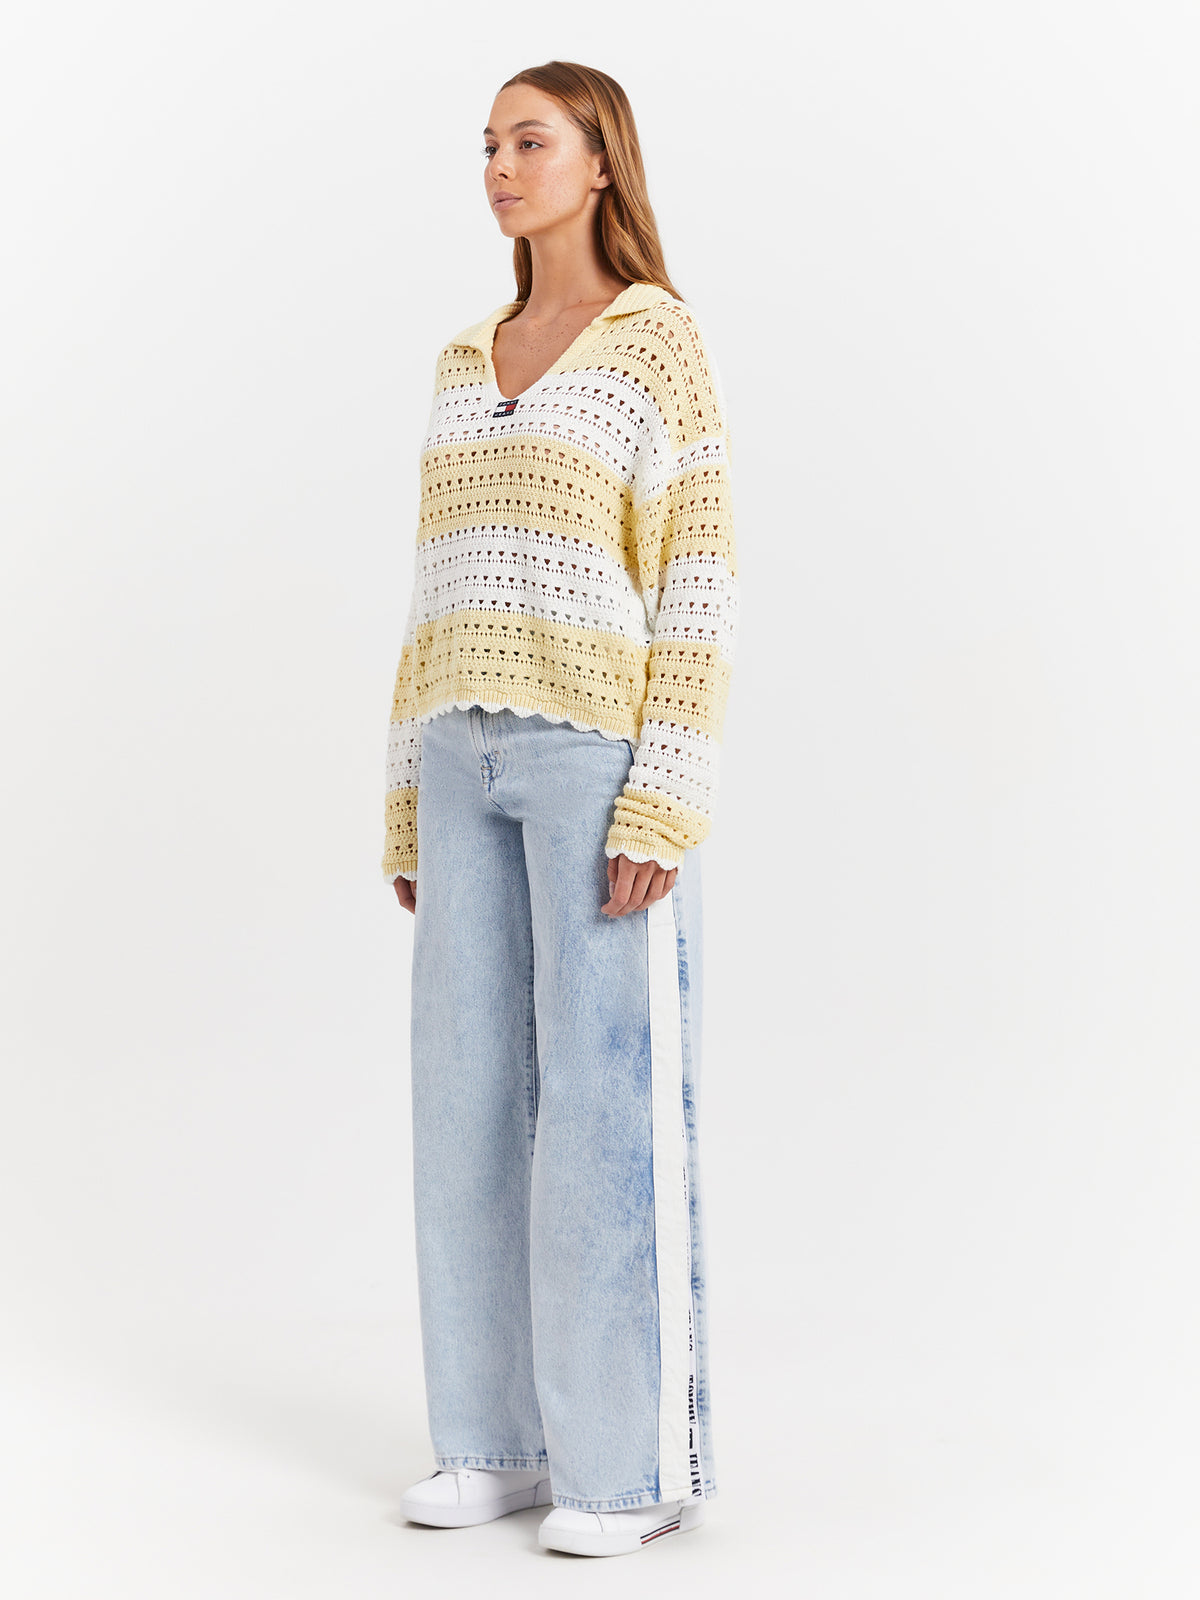 Summer Crochet Sweater in Lemon Zest &amp; White